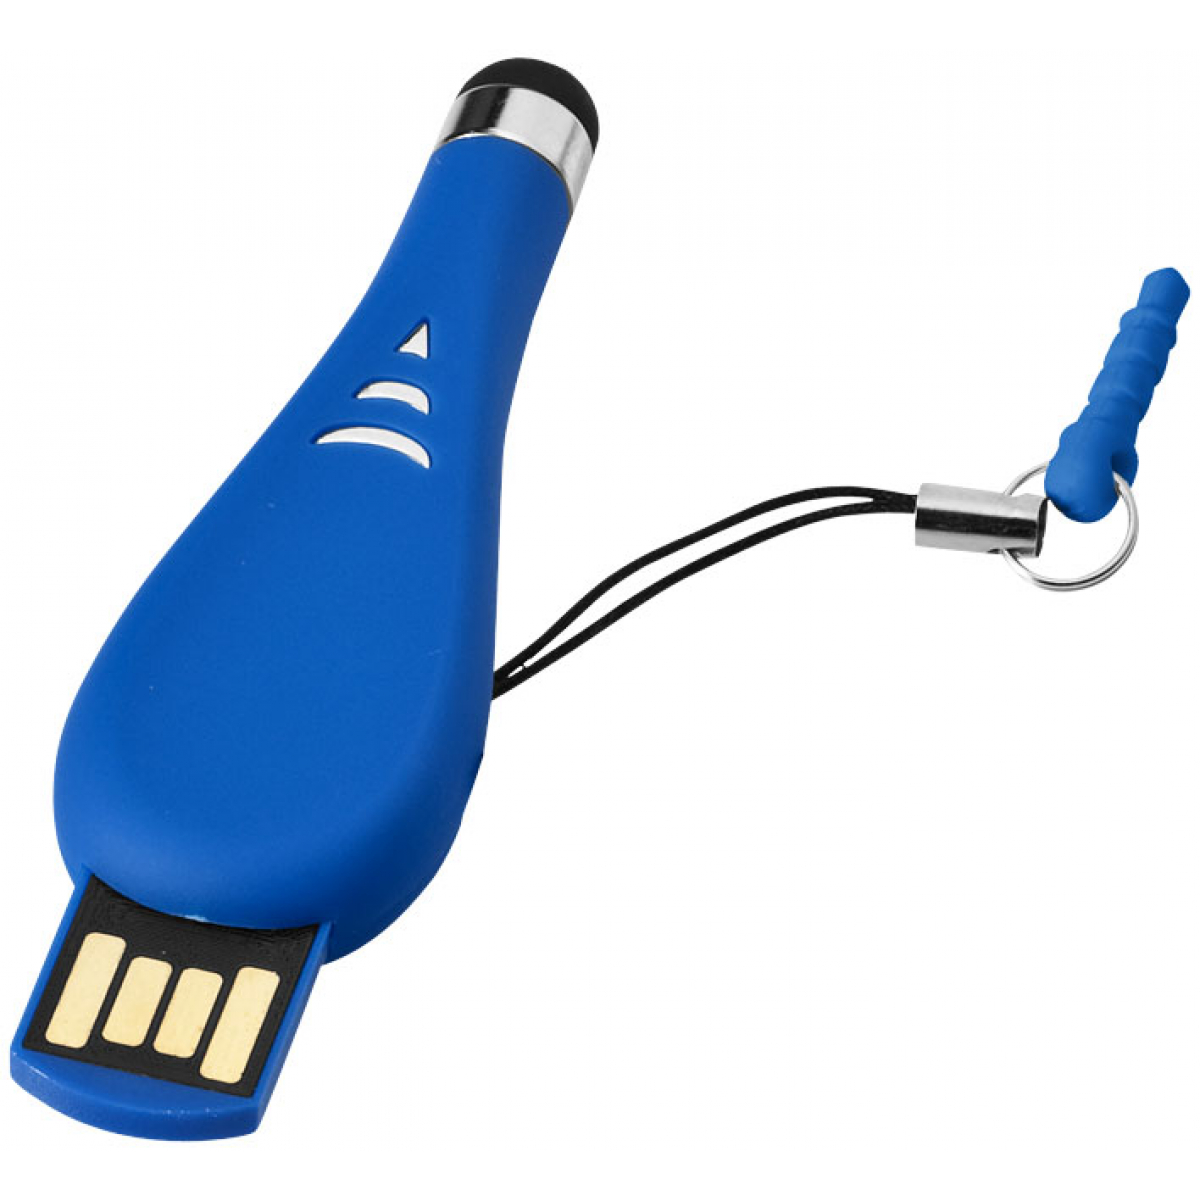 USB Stick 4 GB | Stylus | Plastic 